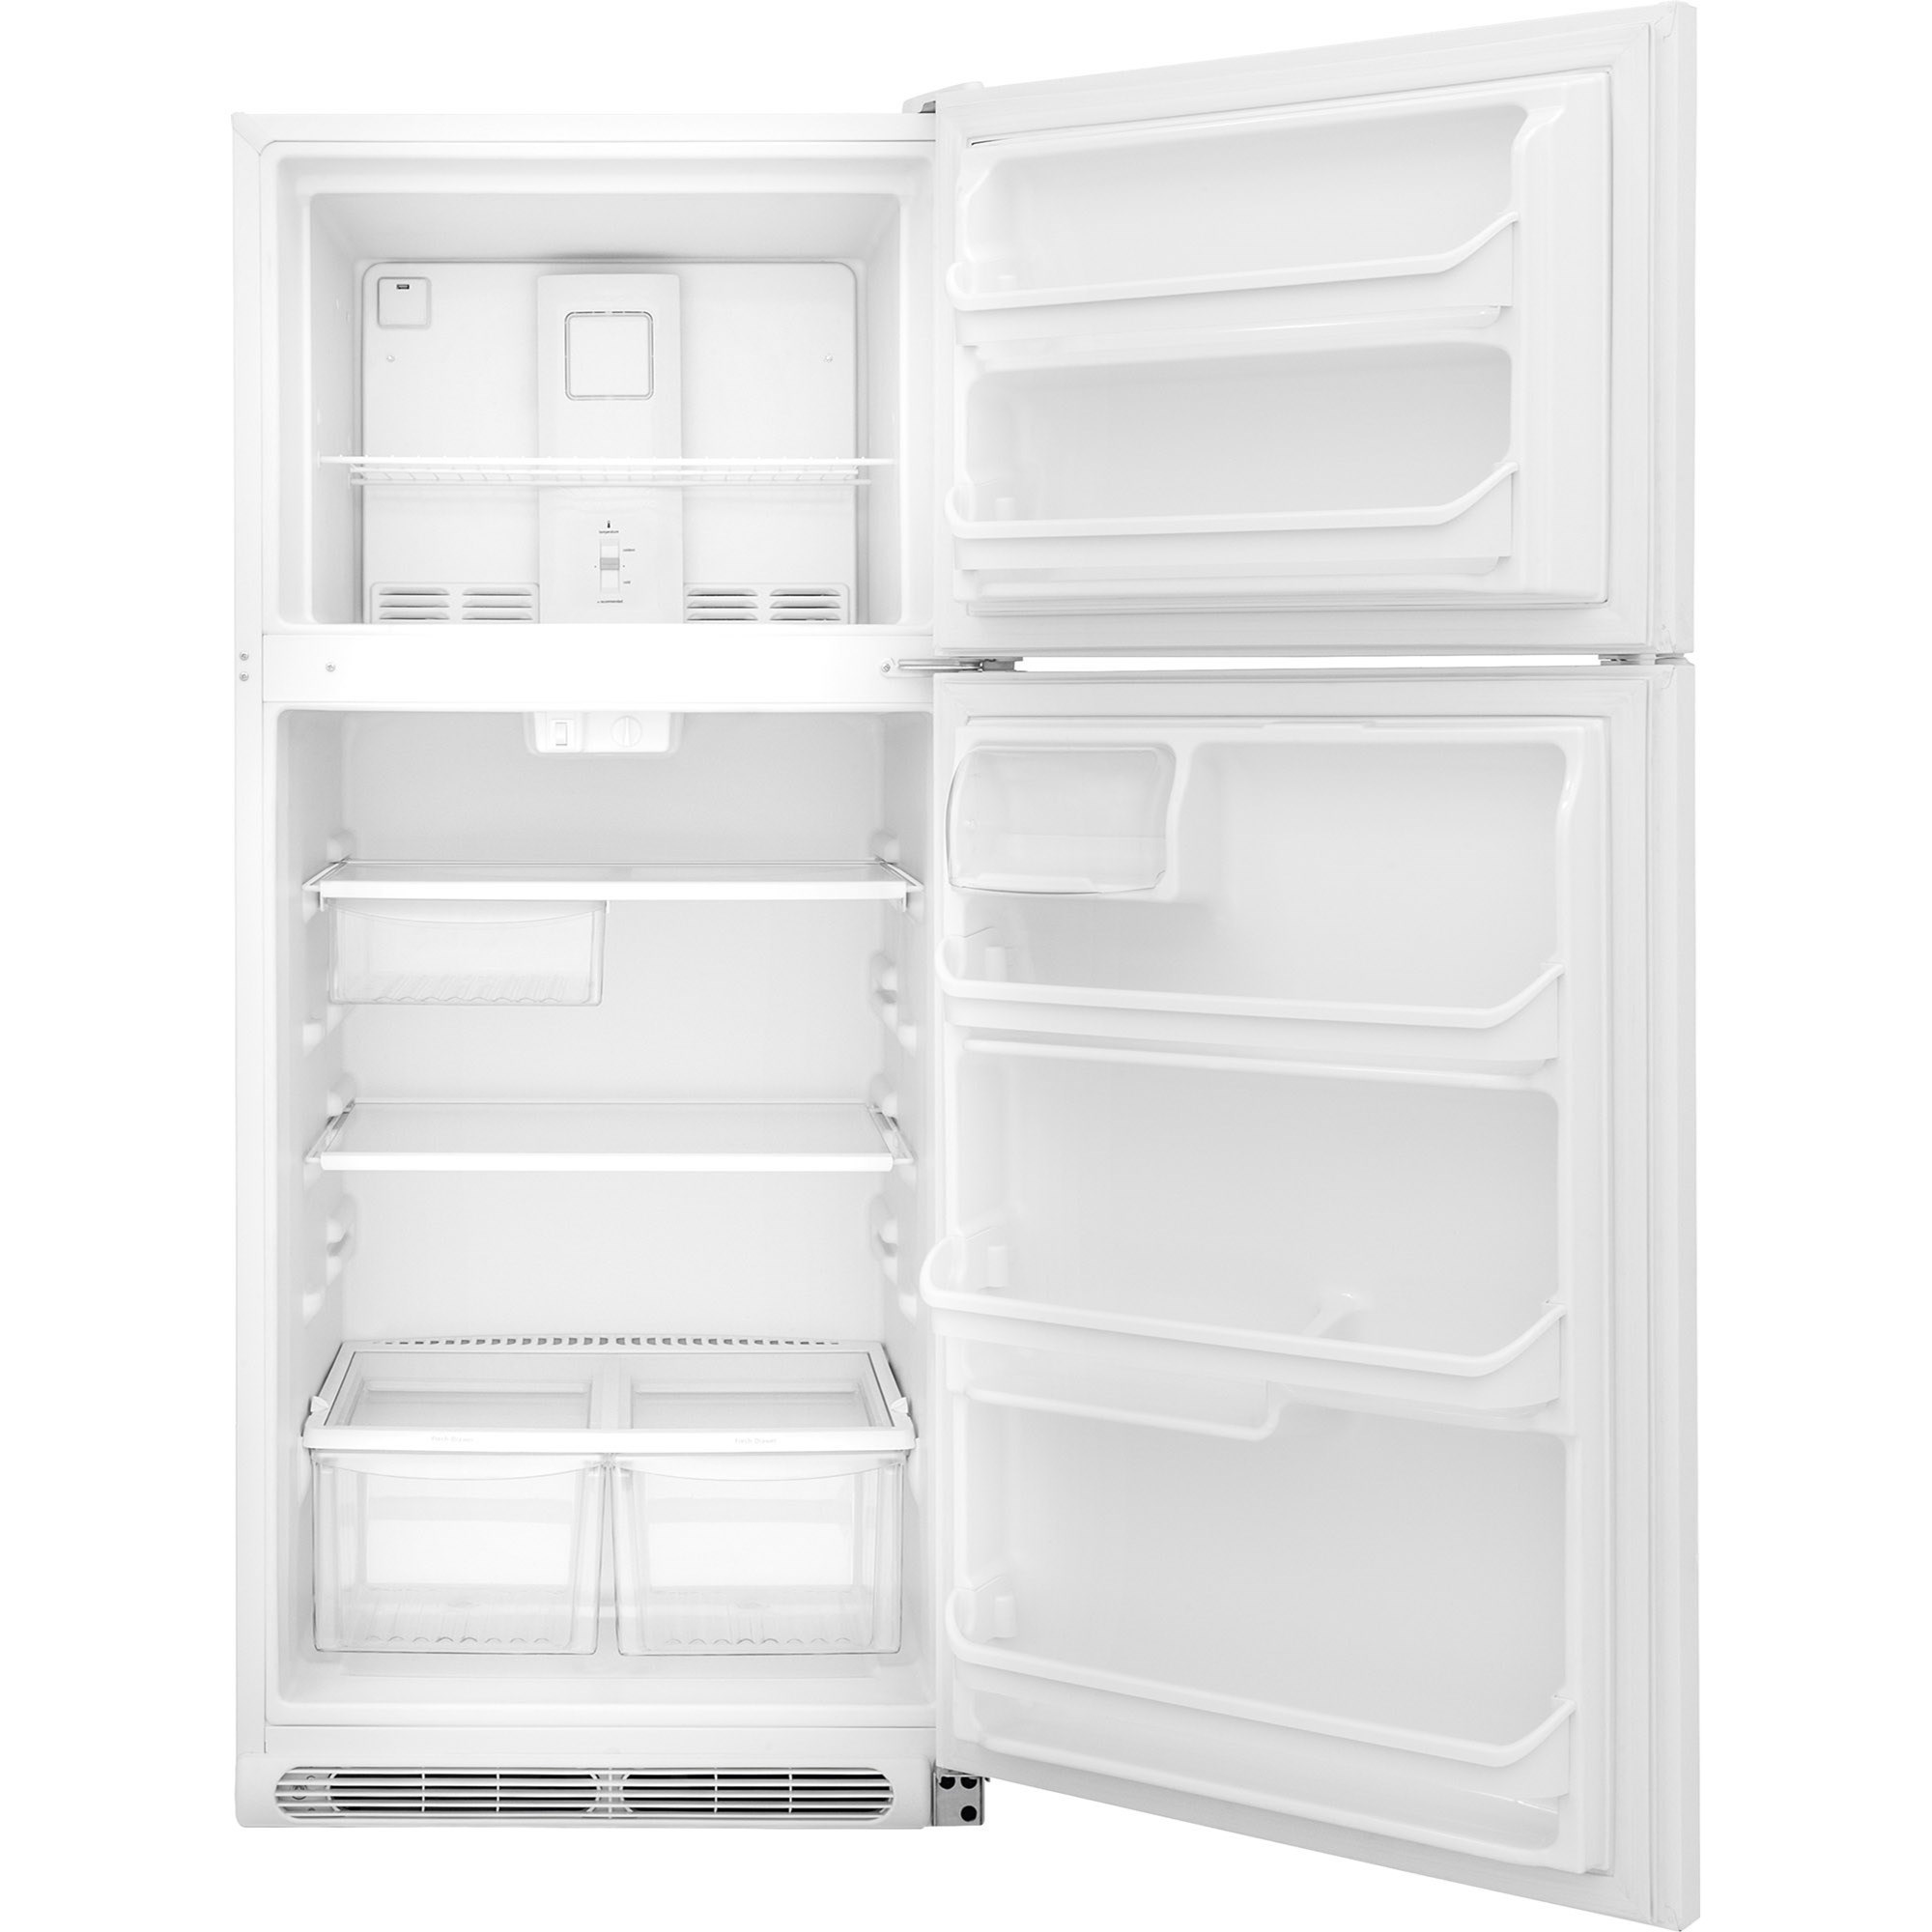 Frigidaire Frtd2021aw 20 4 Cu Ft Top Freezer Refrigerator Furniture